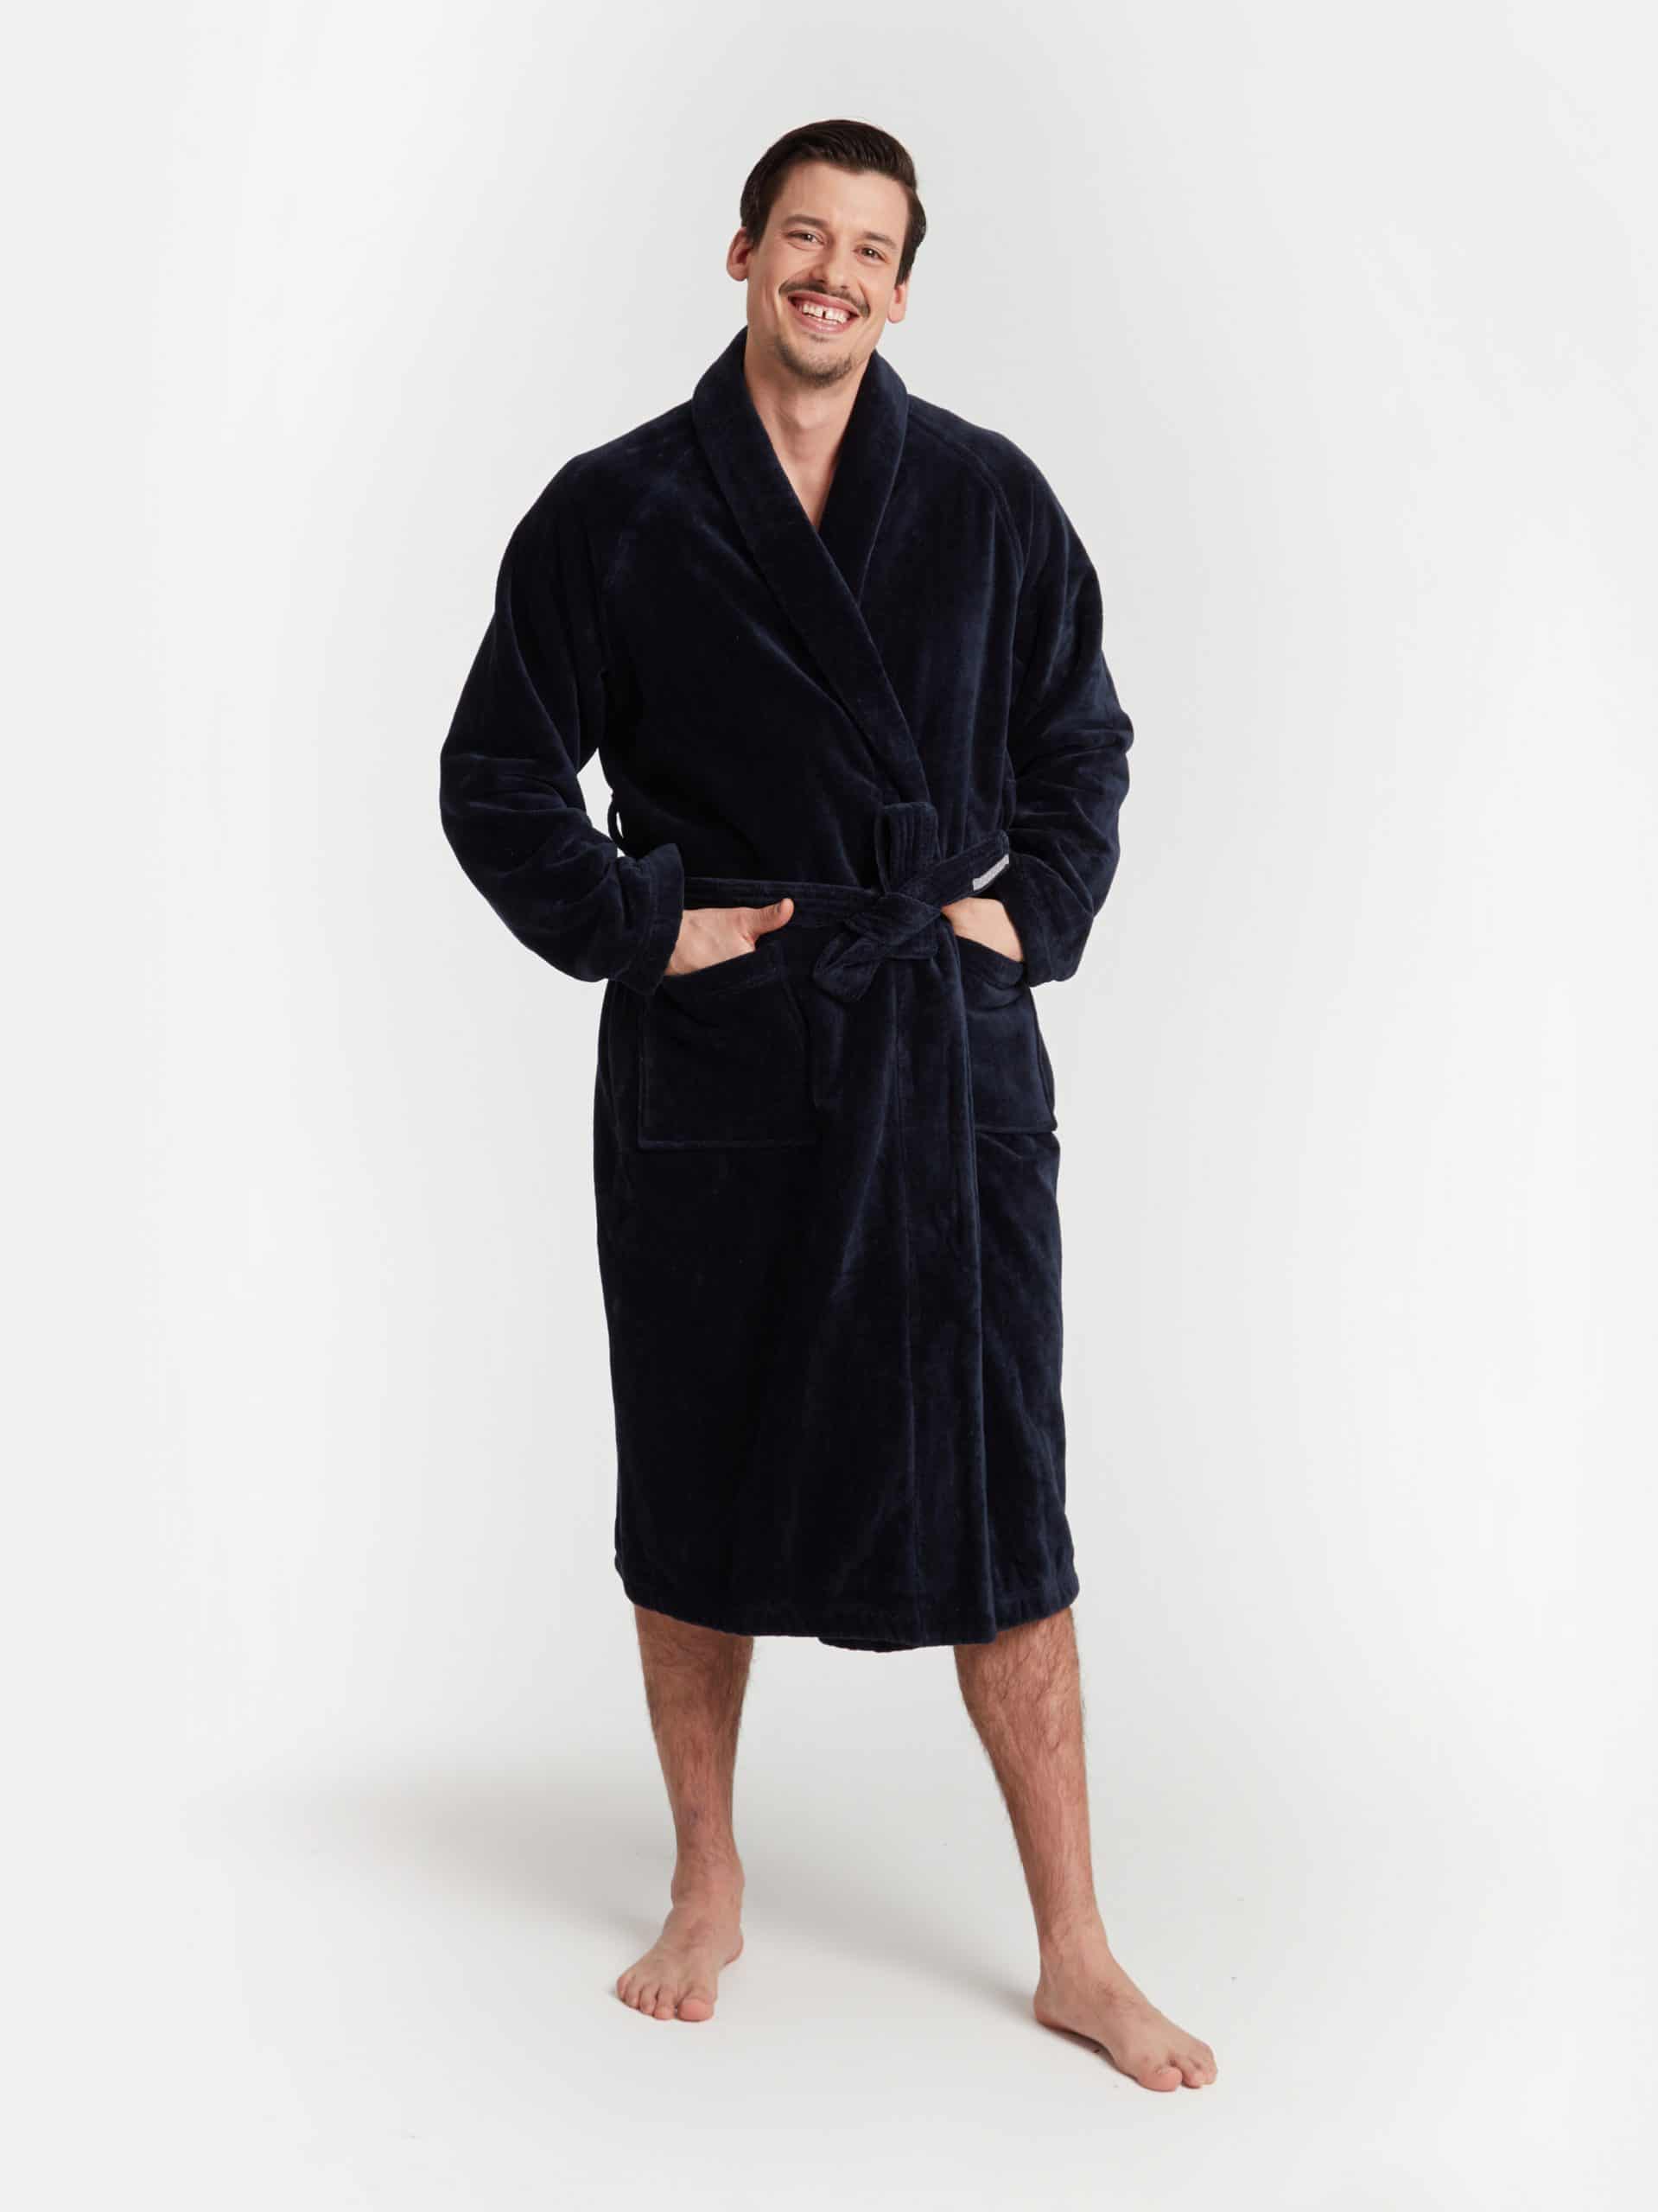 Women's Zip Up Plush Fleece Robe Hooded Warm Long Bathrobe Dressing Gown  Winter Cozy Zipper Lounger Sleepwear Housecoat Loungewear Nightgown |  Fruugo NO